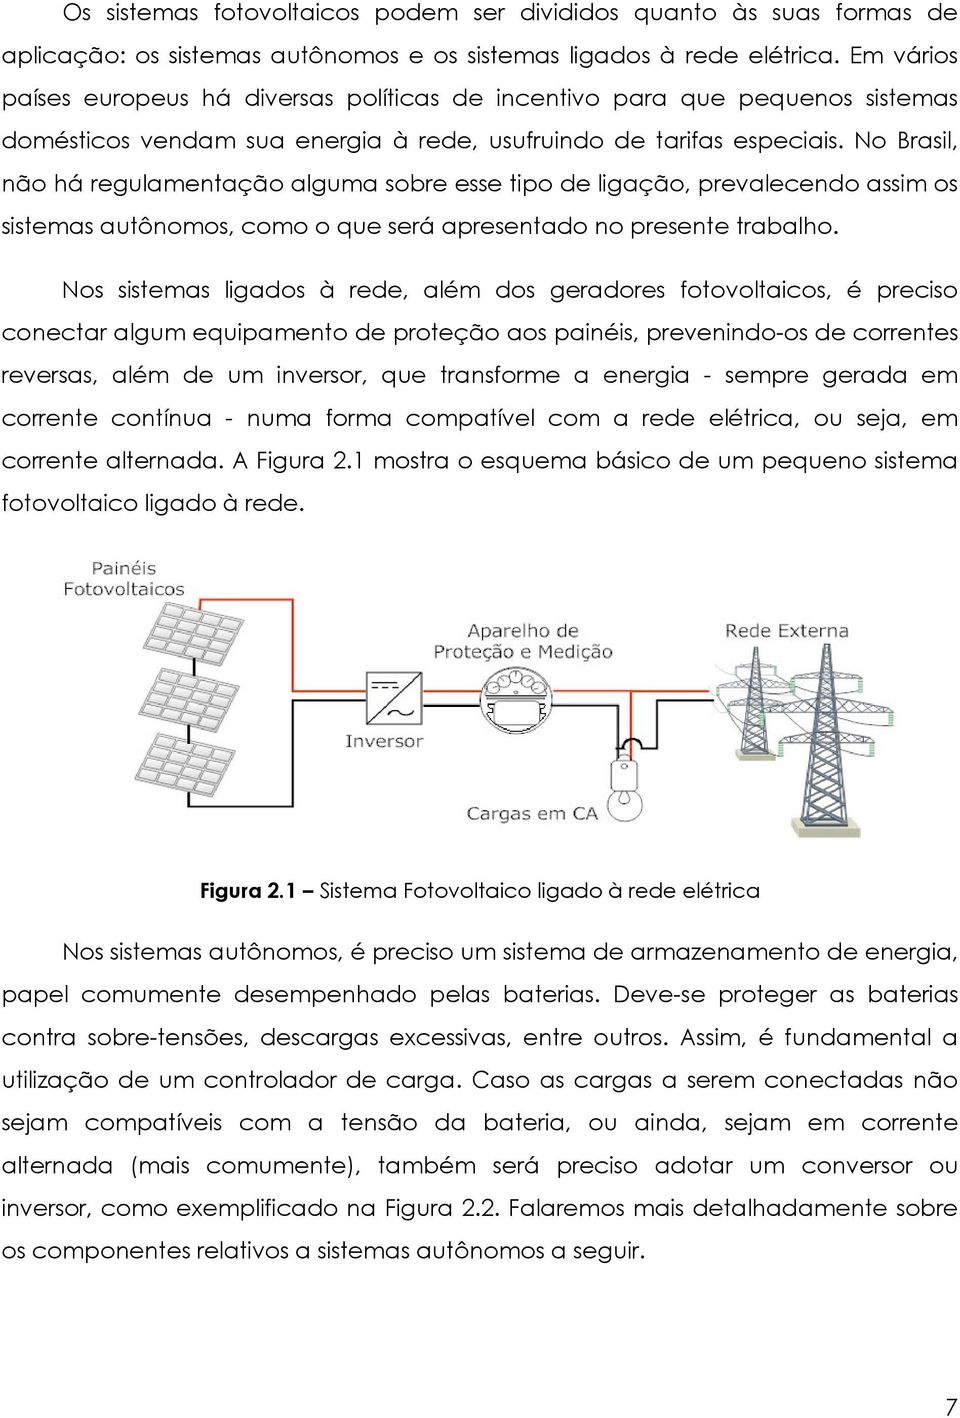 No Brasil, não há regulamentação alguma sobre esse tipo de ligação, prevalecendo assim os sistemas autônomos, como o que será apresentado no presente trabalho.